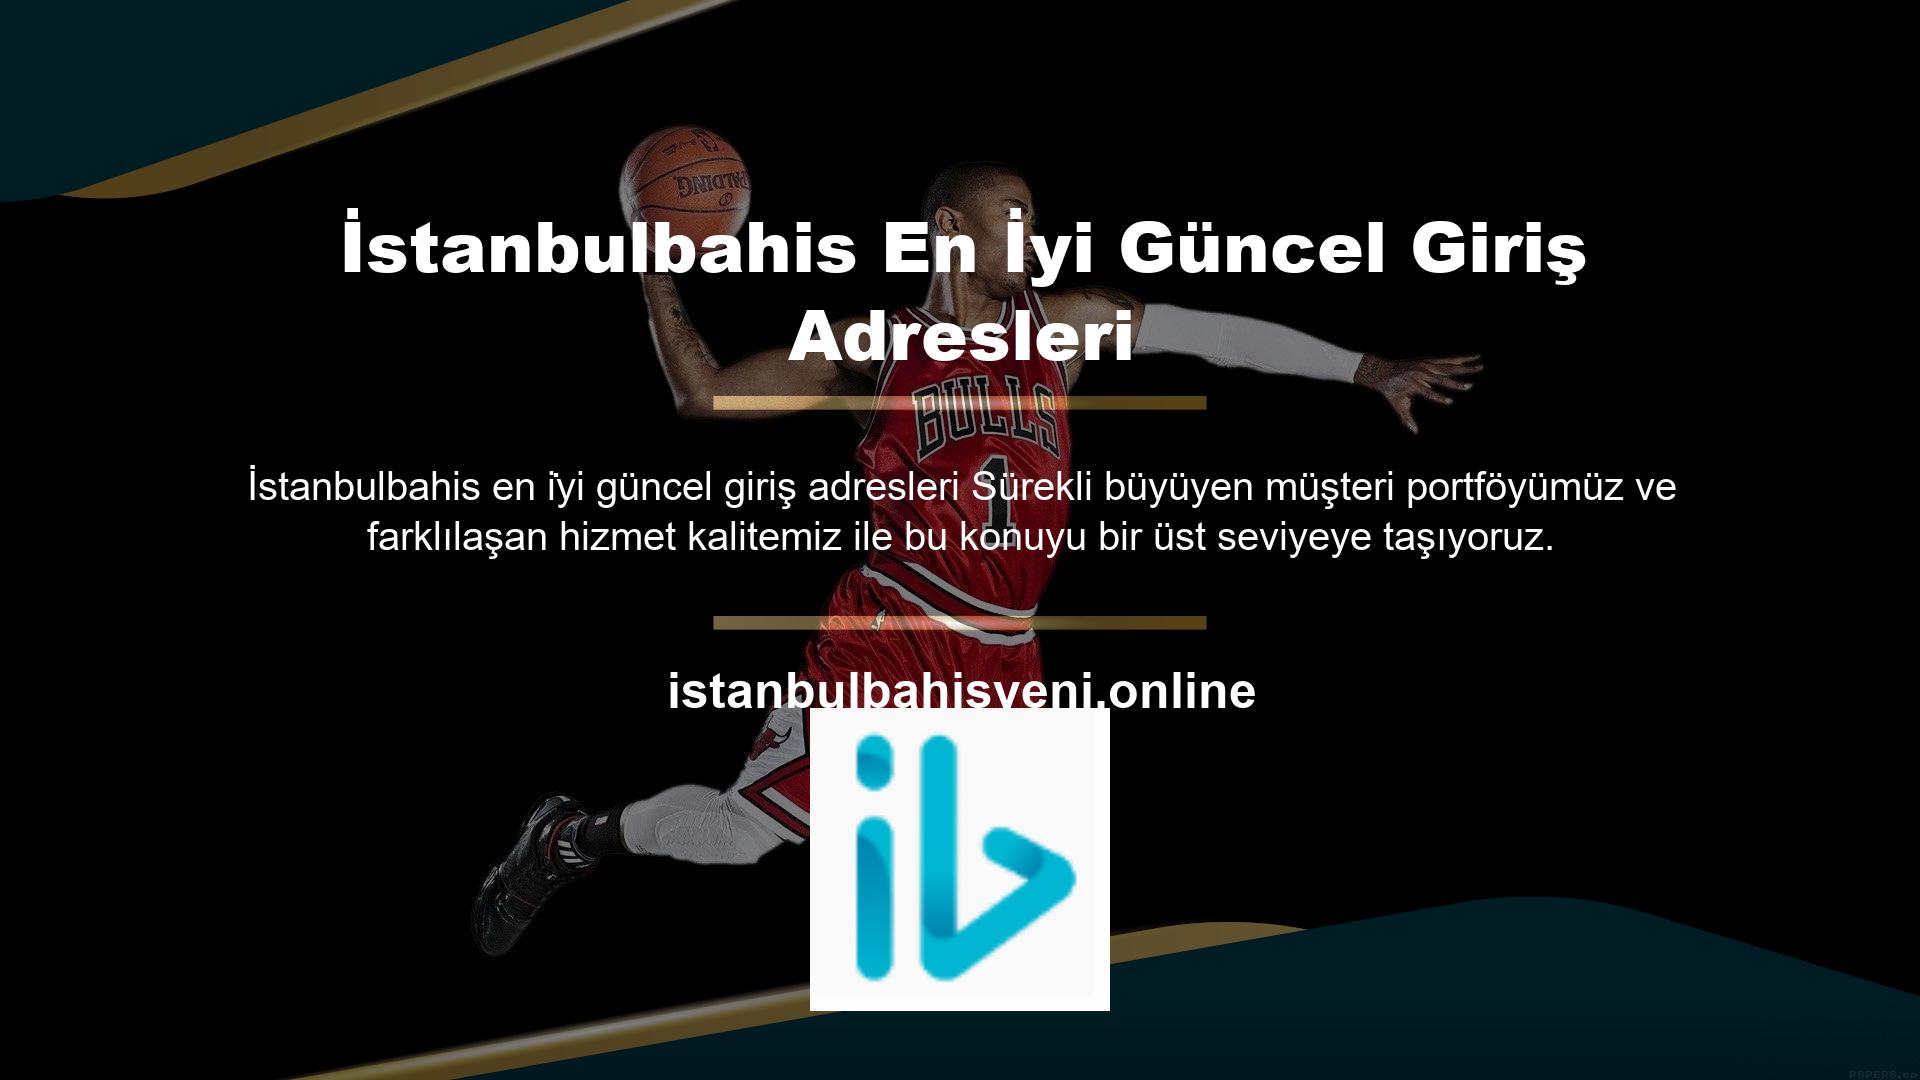 İstanbulbahis için son giriş adresi, İstanbulbahis hakkında bilgi ve sayfalar sağlar